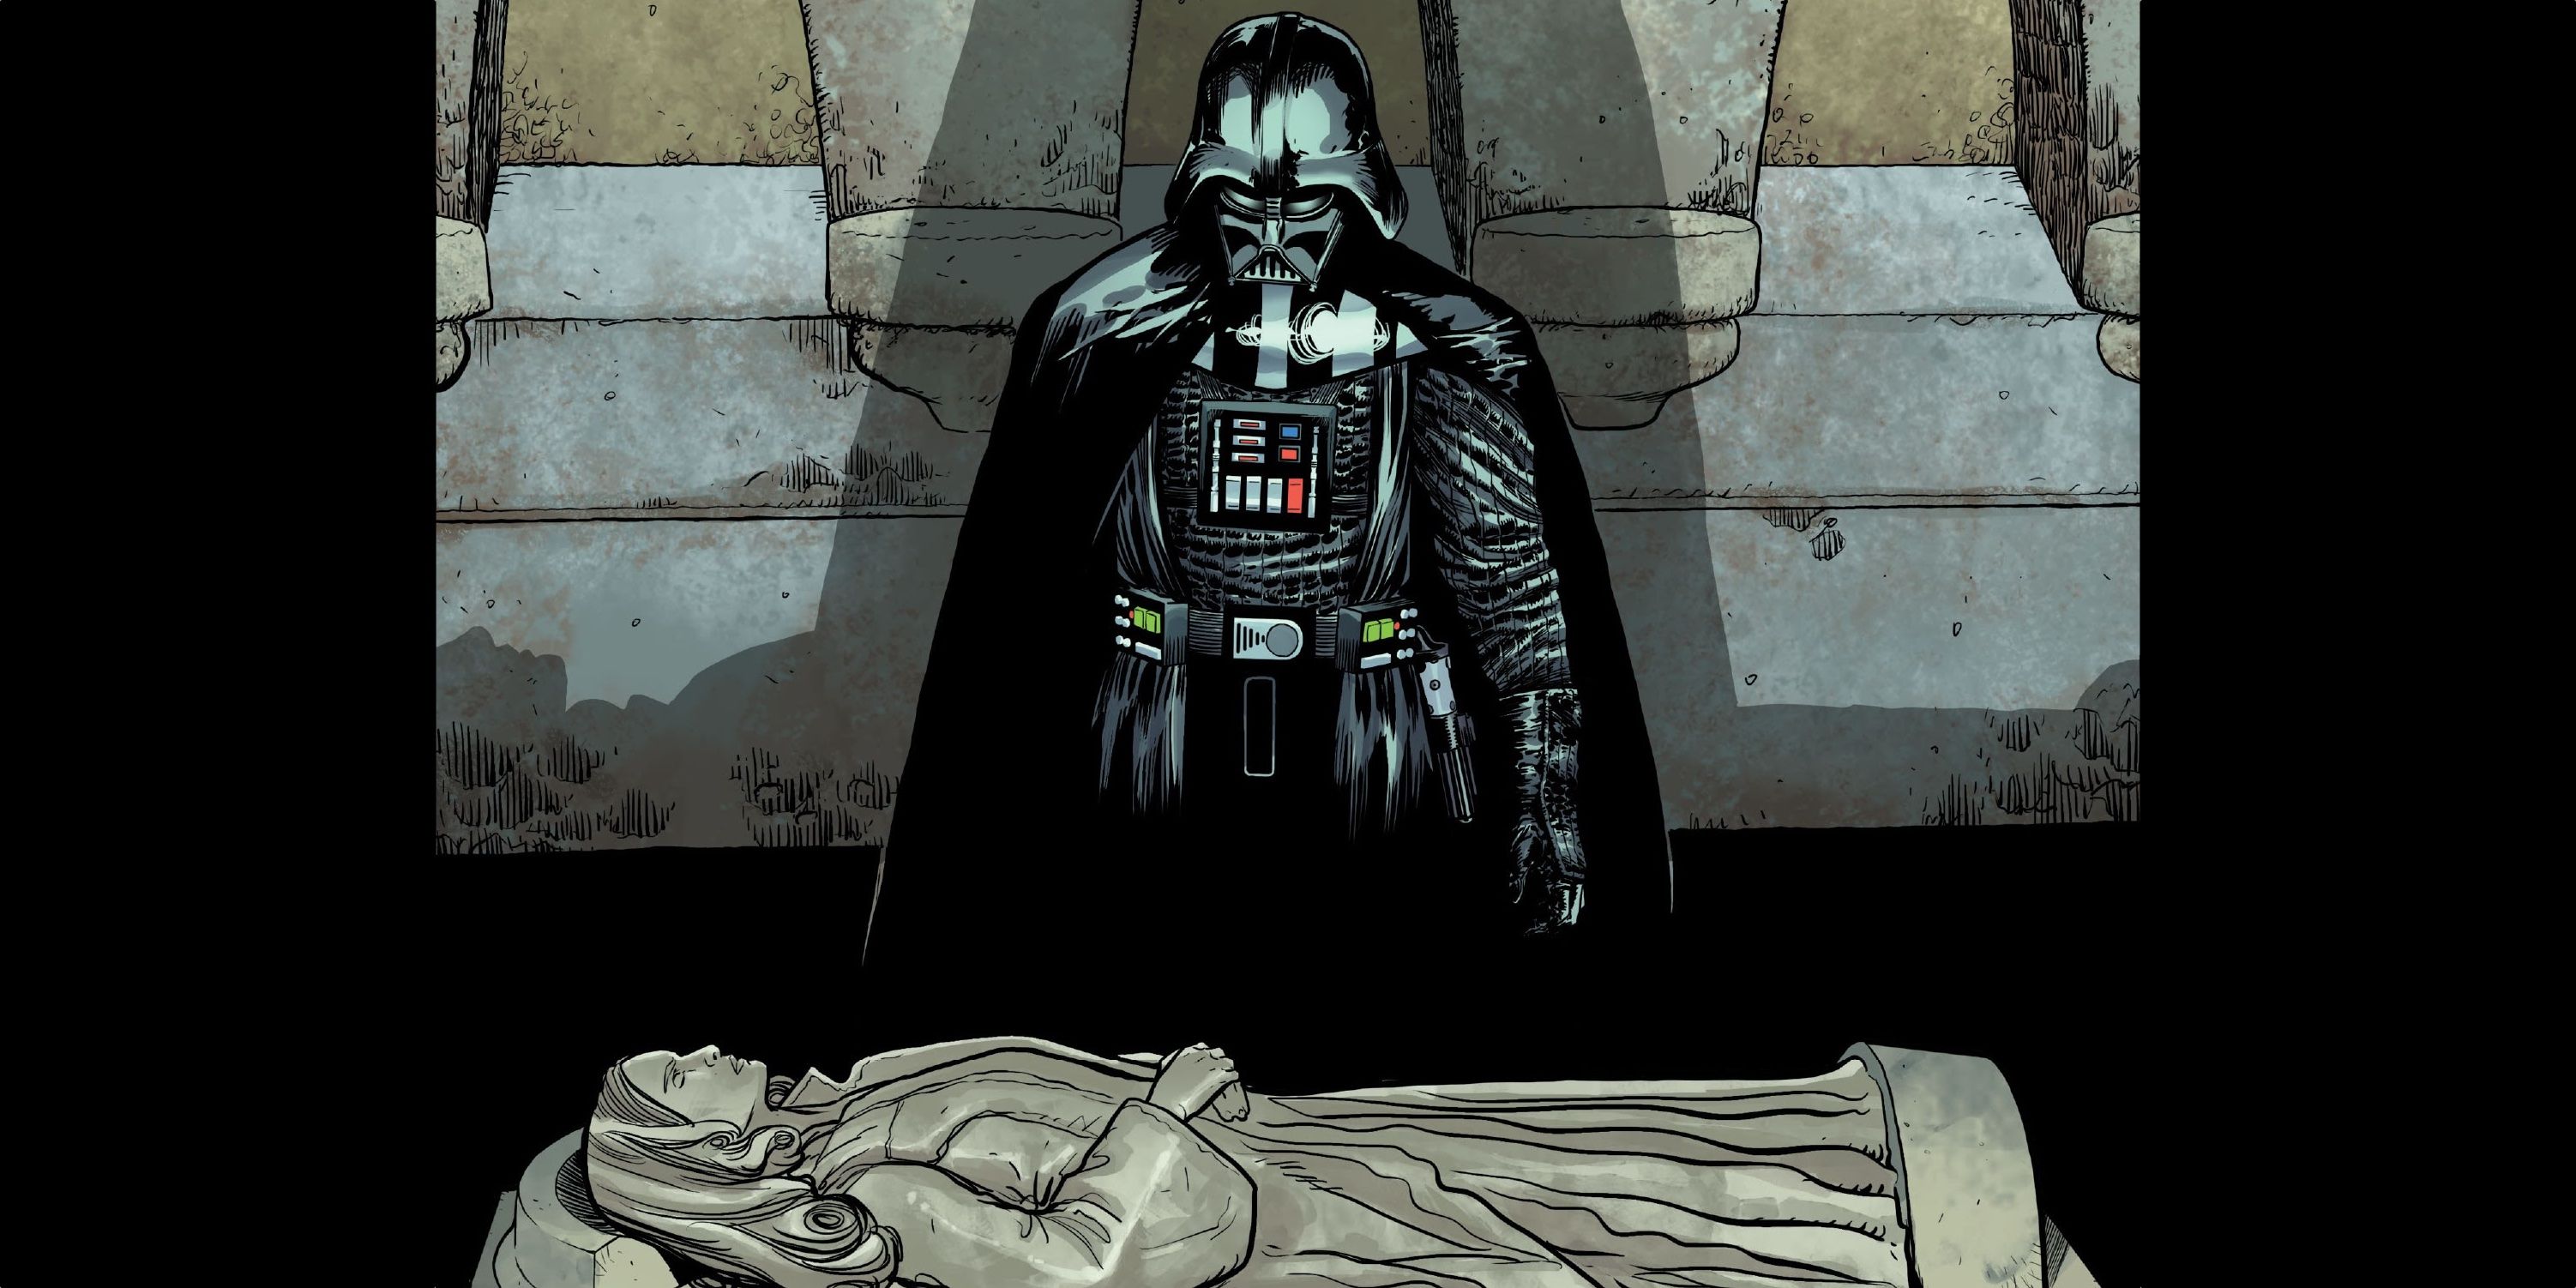 Darth Vader visits the grave of Padmé Amidala in the Darth Vader MArvel comic